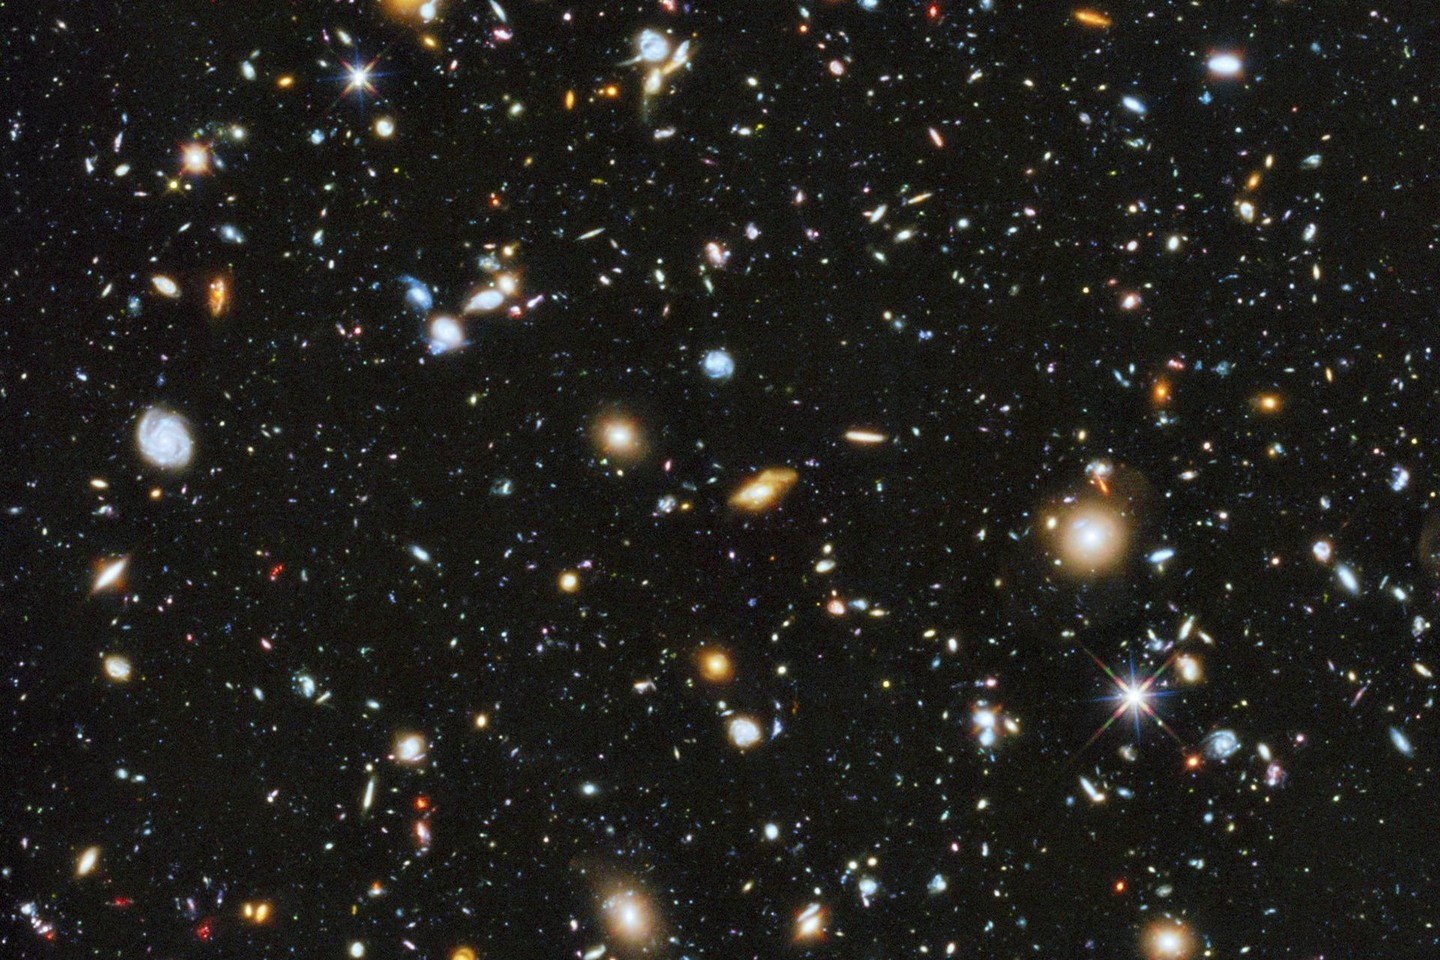 Tikimybė, kad Visatoje esame vienintelės protingos būtybės, yra tiesiog absurdiškai maža.<br>Reuters/Scanpix nuotr.